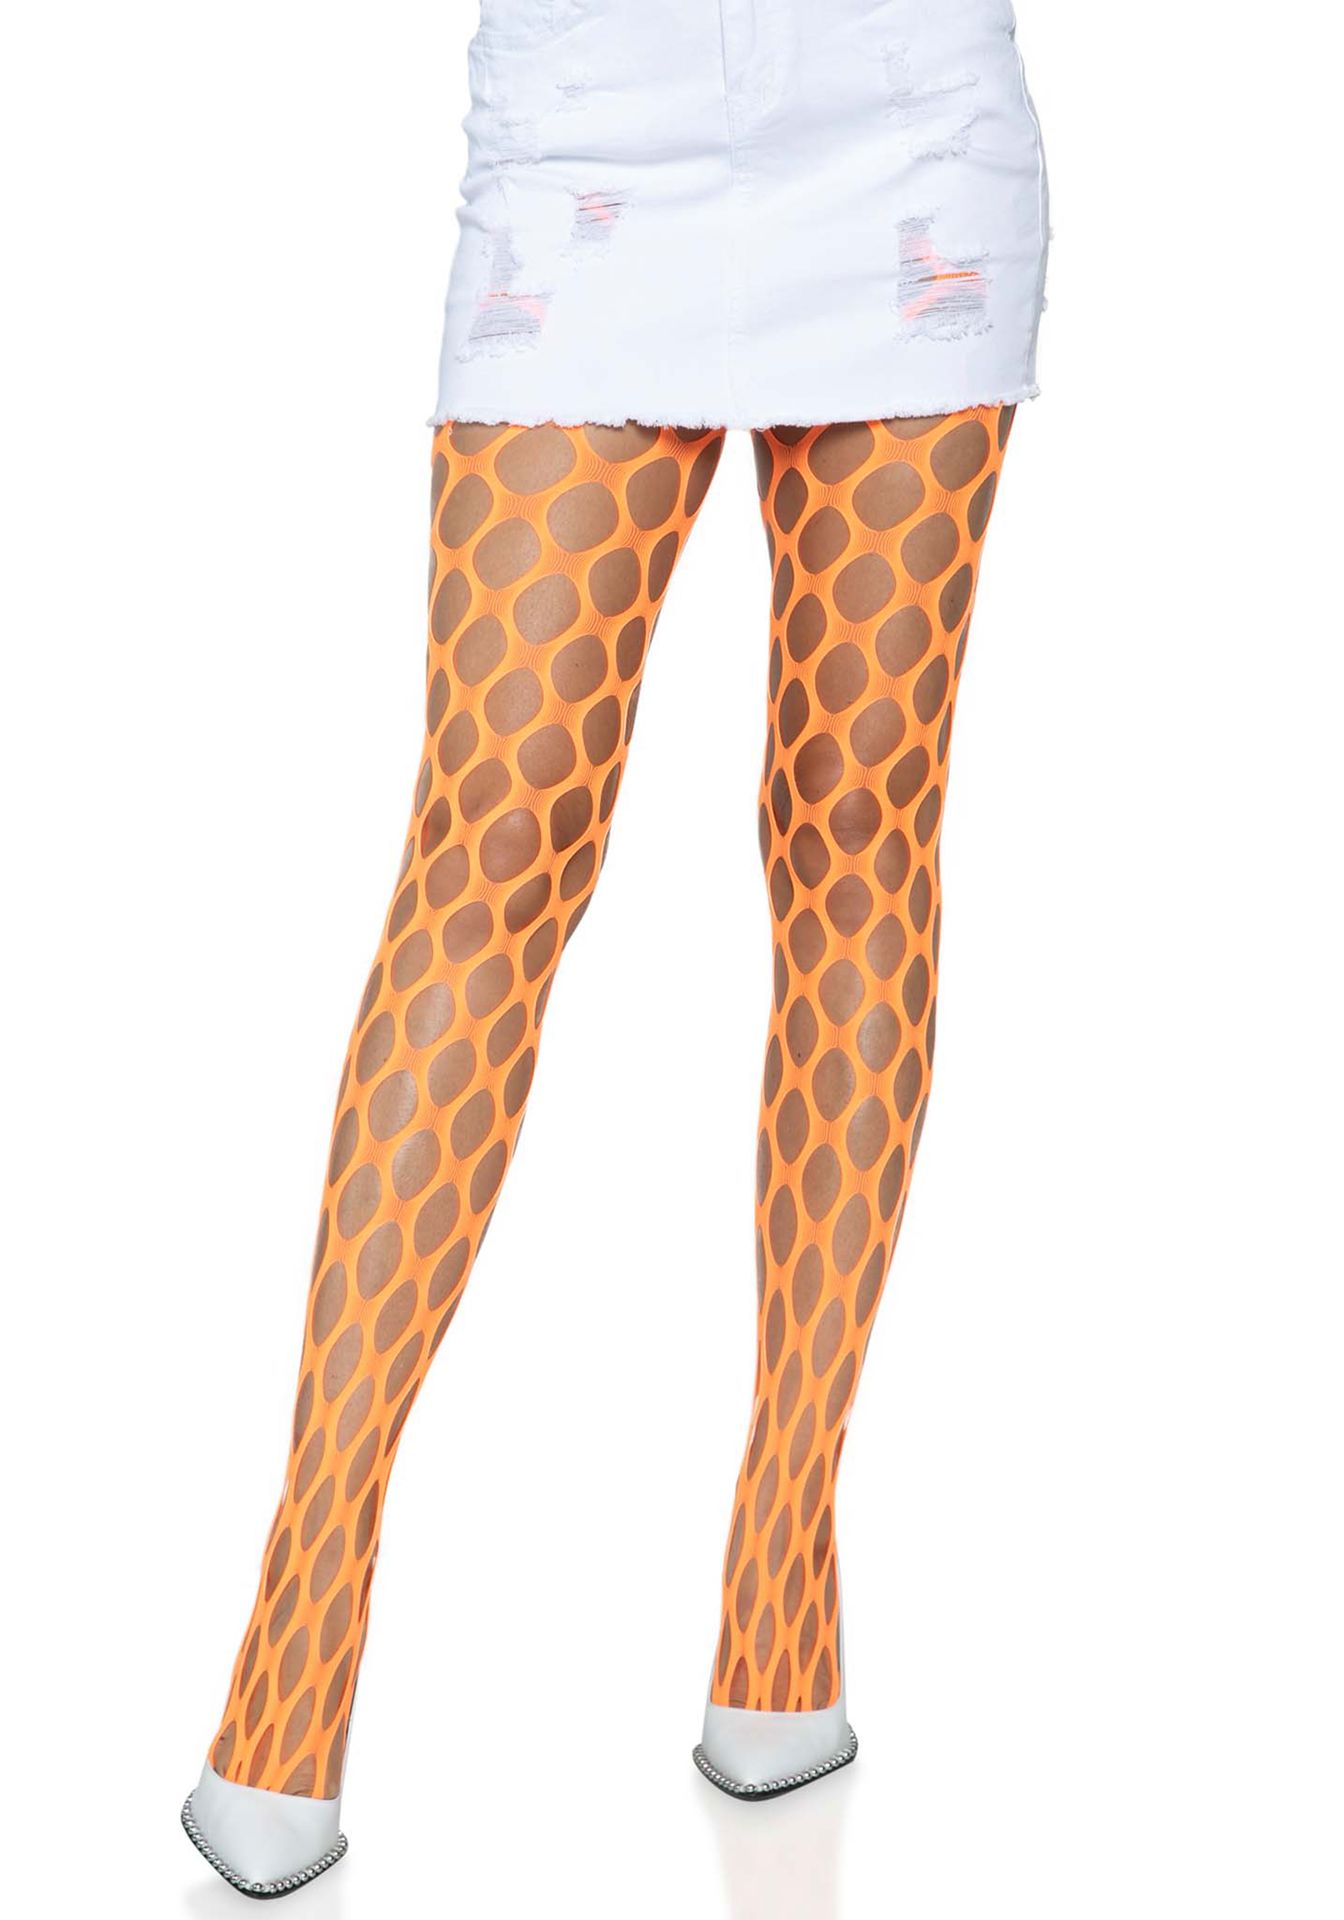 Neon oranje visnet panty met grote gaten